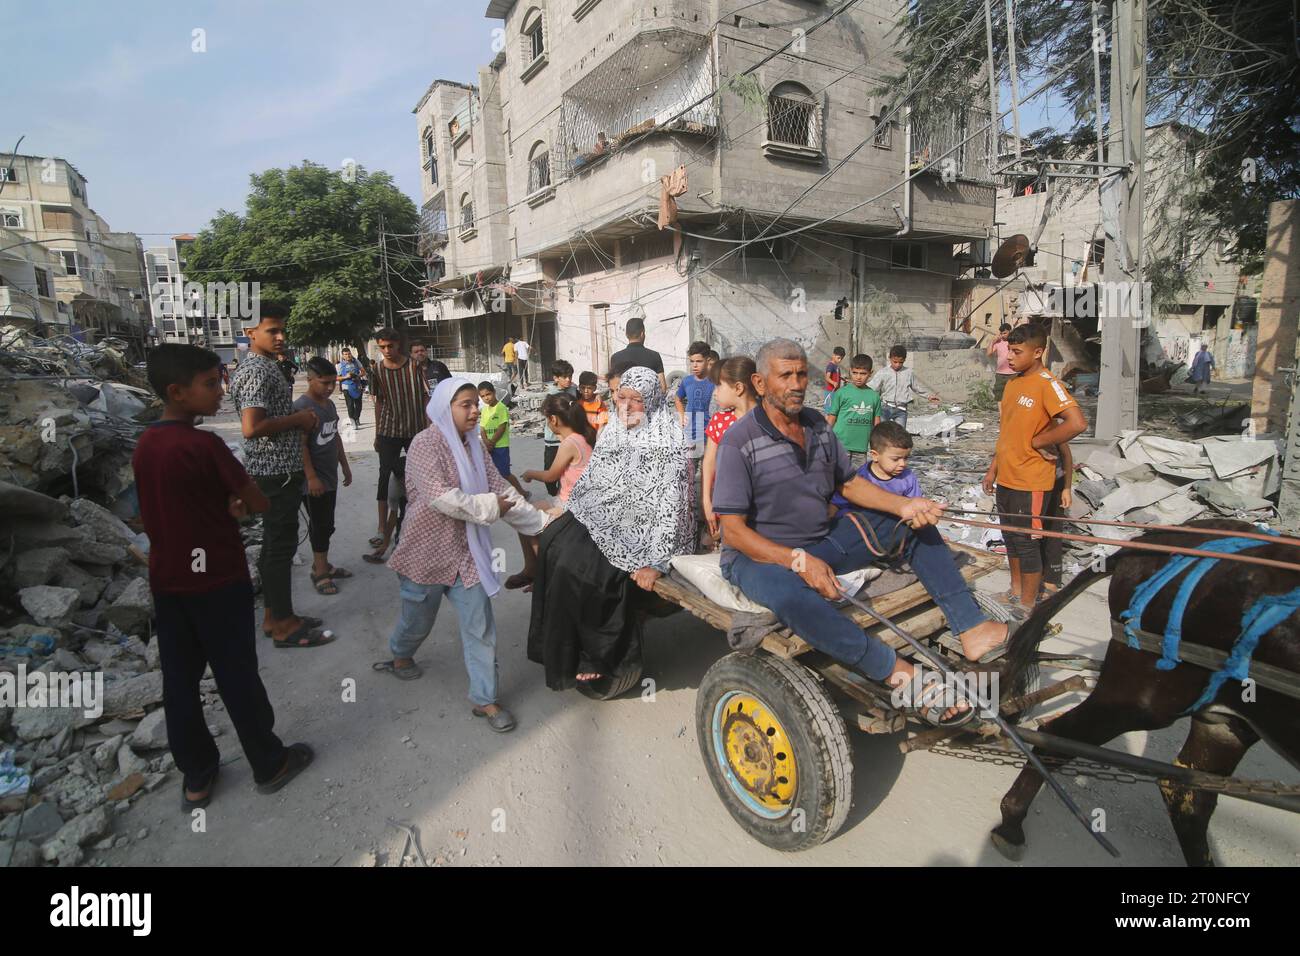 Palästinenser inspizieren die Ruinen eines Gebäudes, das bei israelischen Luftangriffen in Rafah im Süden des Gazastreifens zerstört wurde Palästinenser inspizieren die Ruinen eines Gebäudes, das bei israelischen Luftangriffen in Rafah im Süden des Gazastreifens am 8. Oktober 2023 zerstört wurde. Seit Anfang dieses Jahres wurden 572 Palästinenser getötet, wie von israelischen Besatzungskräften und Siedlern, darunter 313 während der andauernden israelischen Aggression auf Gaza, sagte das Gesundheitsministerium heute in einem Bericht. Foto: Mahmoud Fareed apaimages Rafah Gazastreifen palästinensisches Gebiet 081023 RAFAH MF 2 007 Copyright: Xapaimage Stockfoto